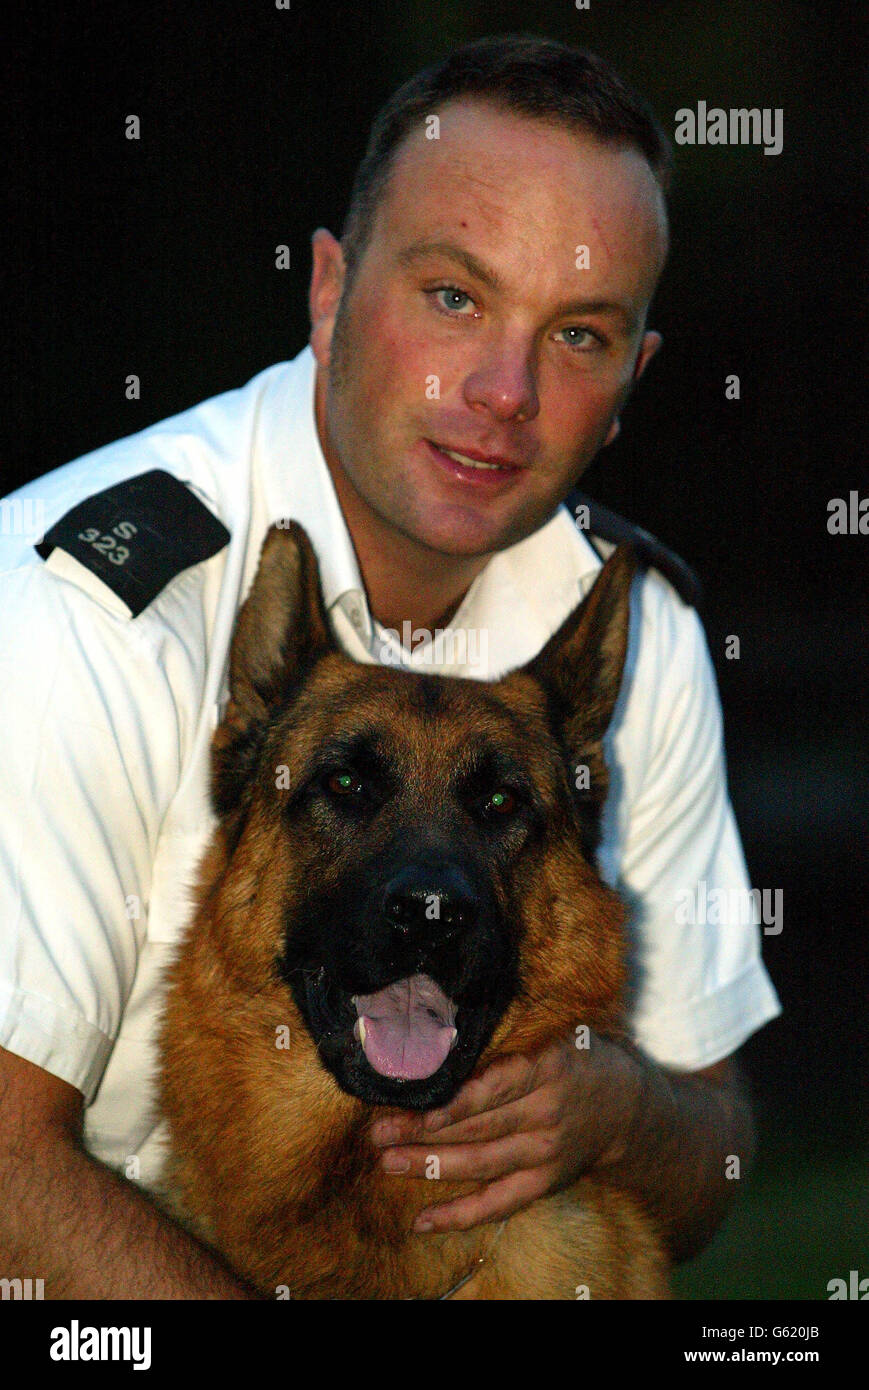 Major, der dreijährige Schäferhund, der sich mit seinem Handler P.C Jason Cooke zu Hause erholt. Der Polizeihund bekam seinen Mann, obwohl er während einer Verfolgungsjagd auf Metallspitzen aufgespießt wurde. * Er wurde von einem Polizisten vorsichtig von den Stacheln gehoben und machte sich dann hartnäckig wieder auf den Weg, um einen mutmaßlichen Autodieb zu verfolgen. Der Hund wurde mit Handler PC Jason Cooke gerufen, nachdem ein Auto in Clapton, Ost-London gestohlen gemeldet wurde. Stockfoto